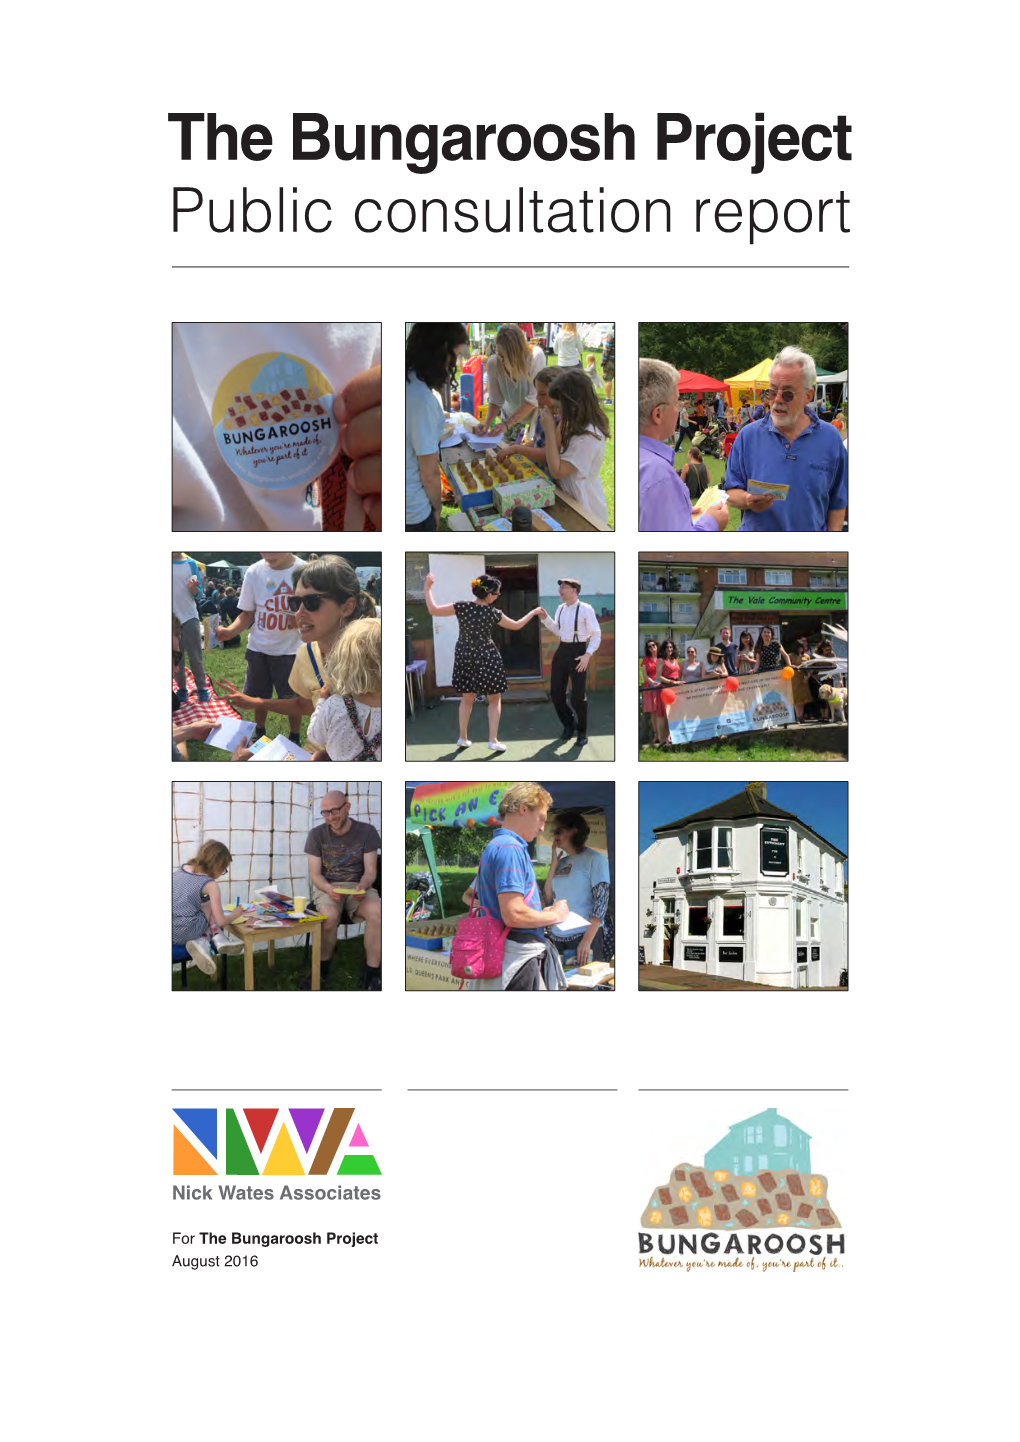 The Bungaroosh Project Public Consultation Report